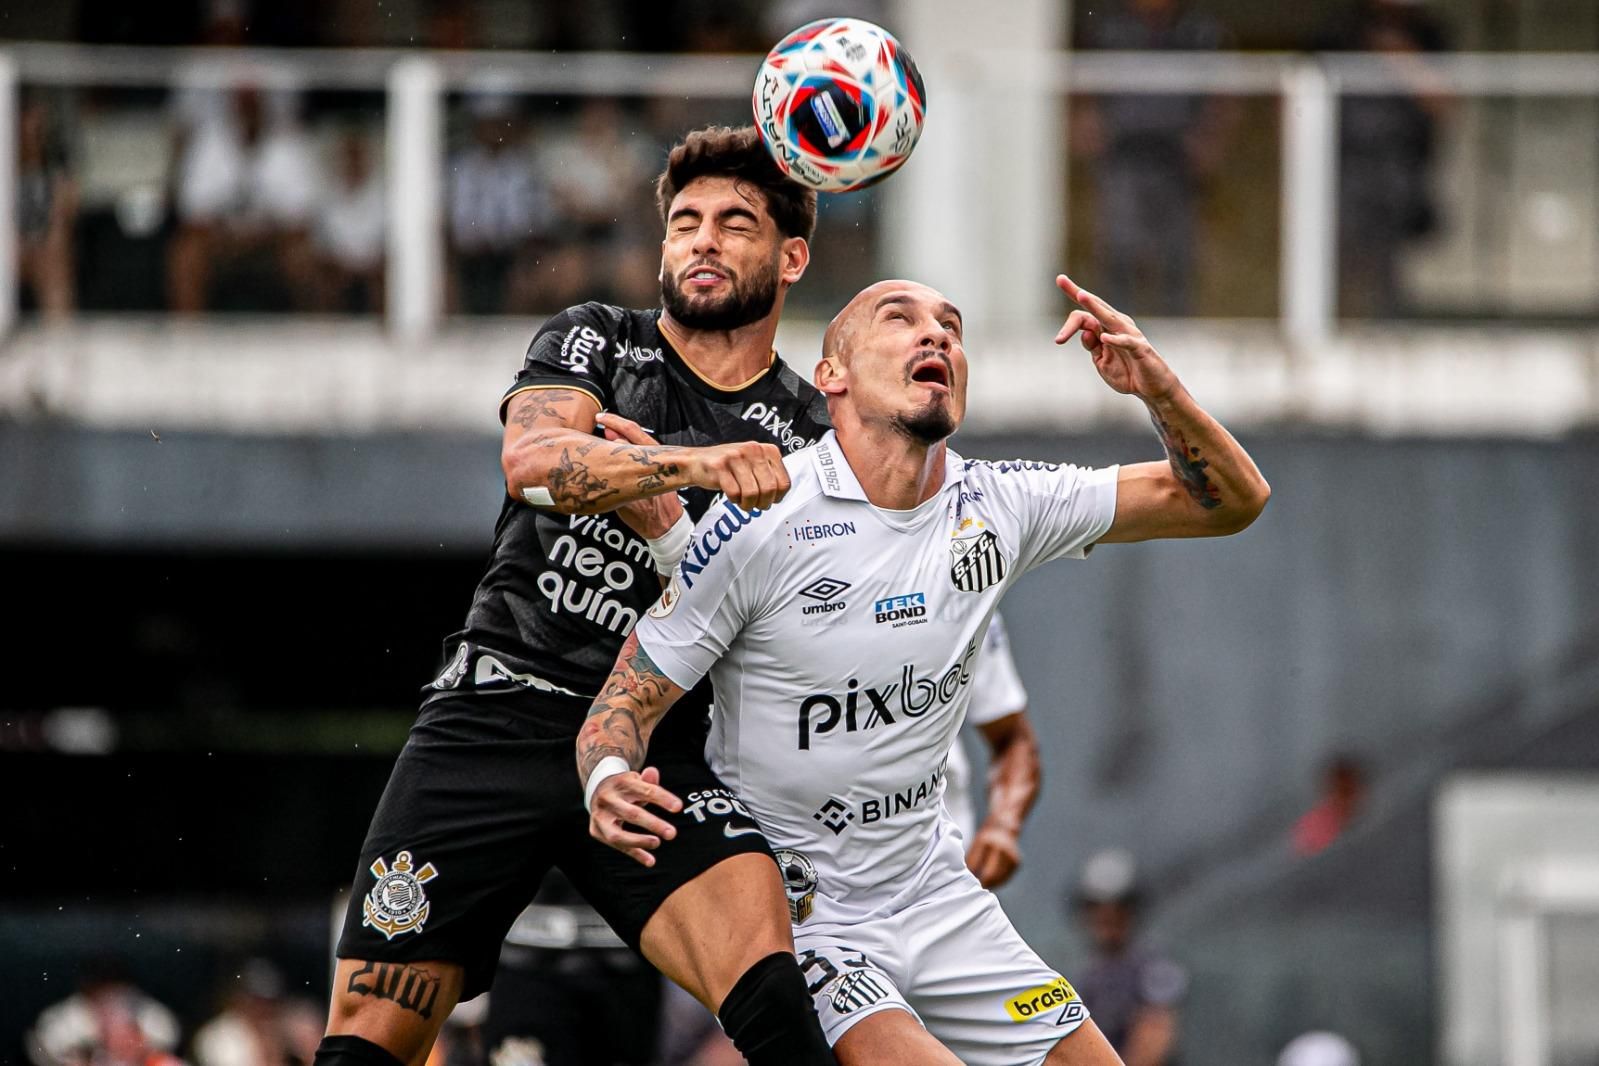 Zagueiro supera Fagner e se torna único jogador do Corinthians a participar  de todos os jogos da temporada